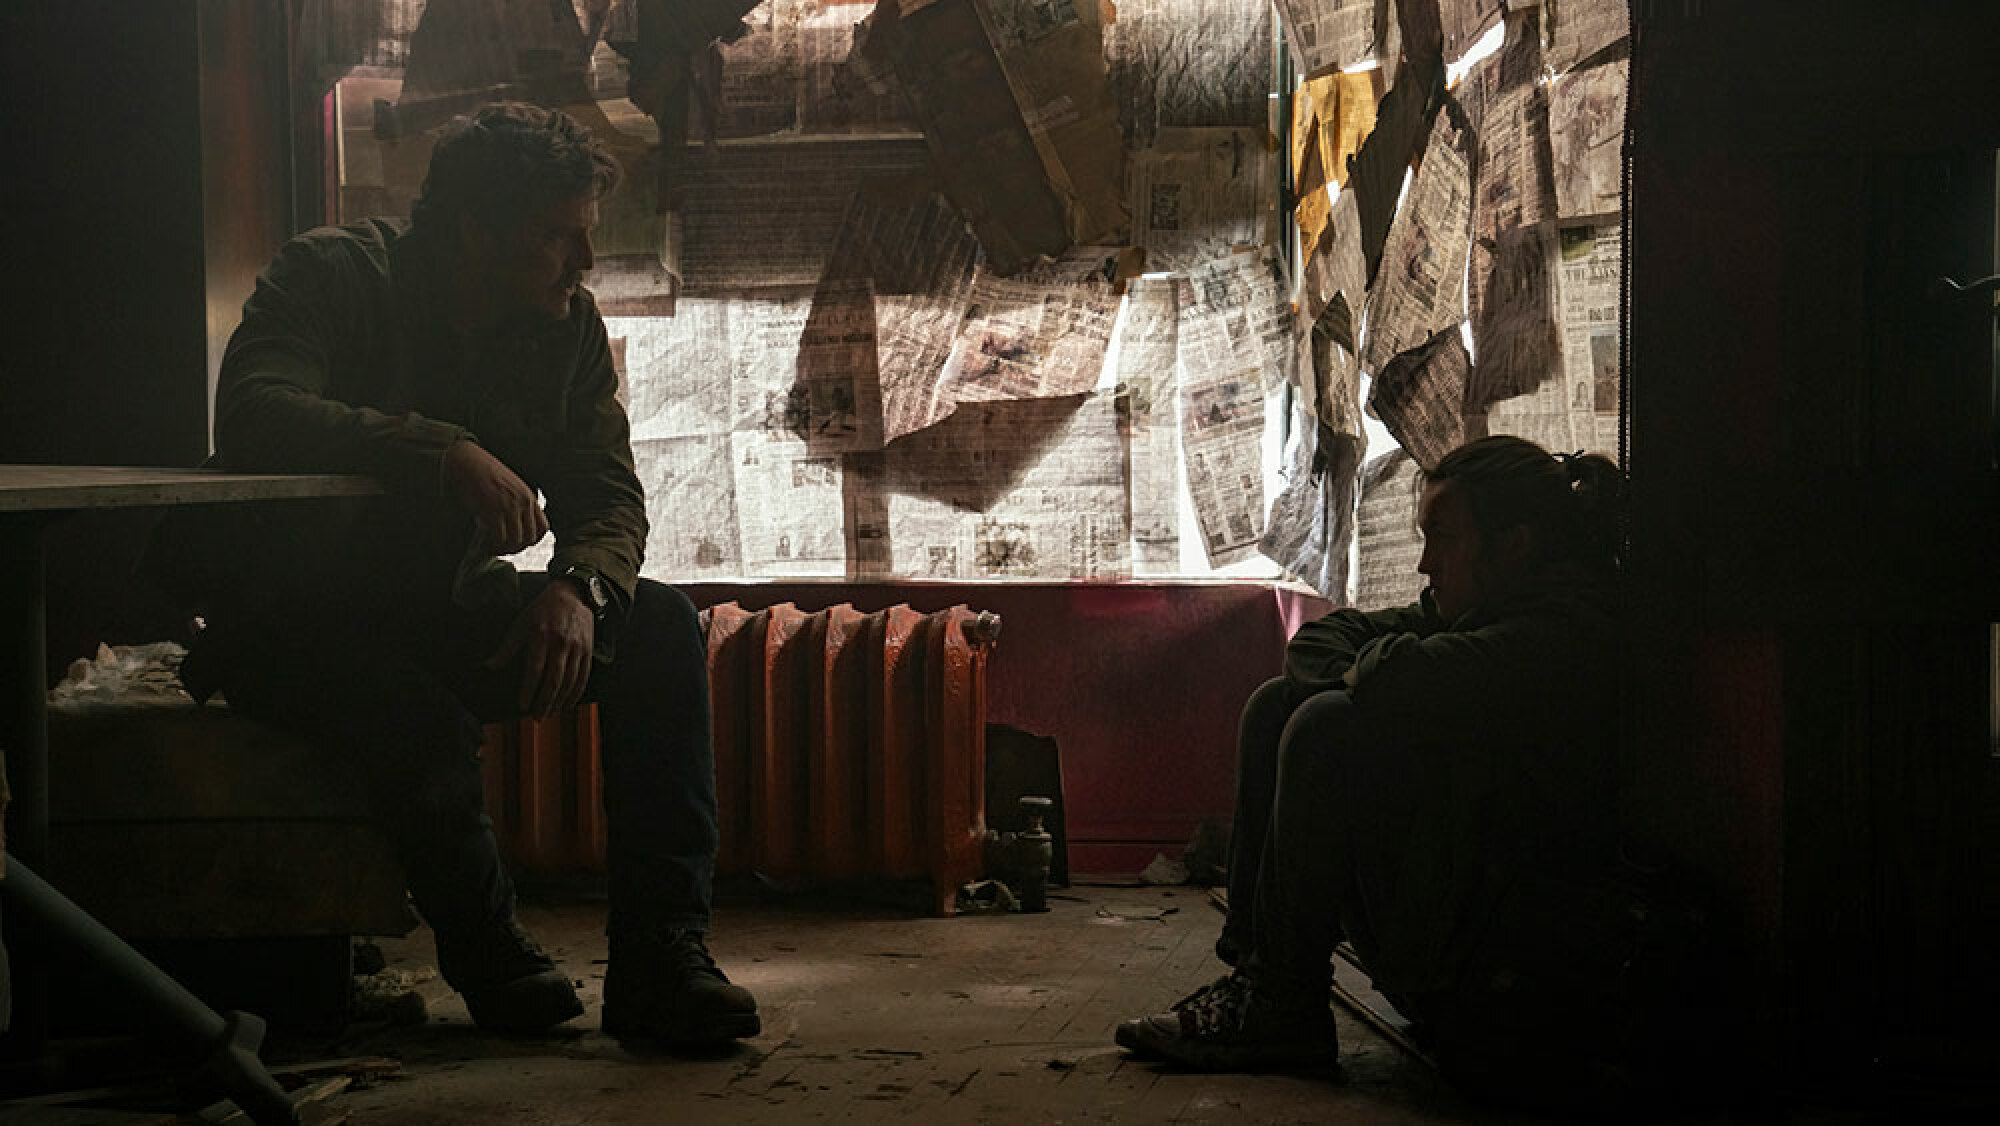 Un homme et une jeune fille discutent dans la pièce sombre d'un immeuble abandonné.  Les journaux couvrent les fenêtres.